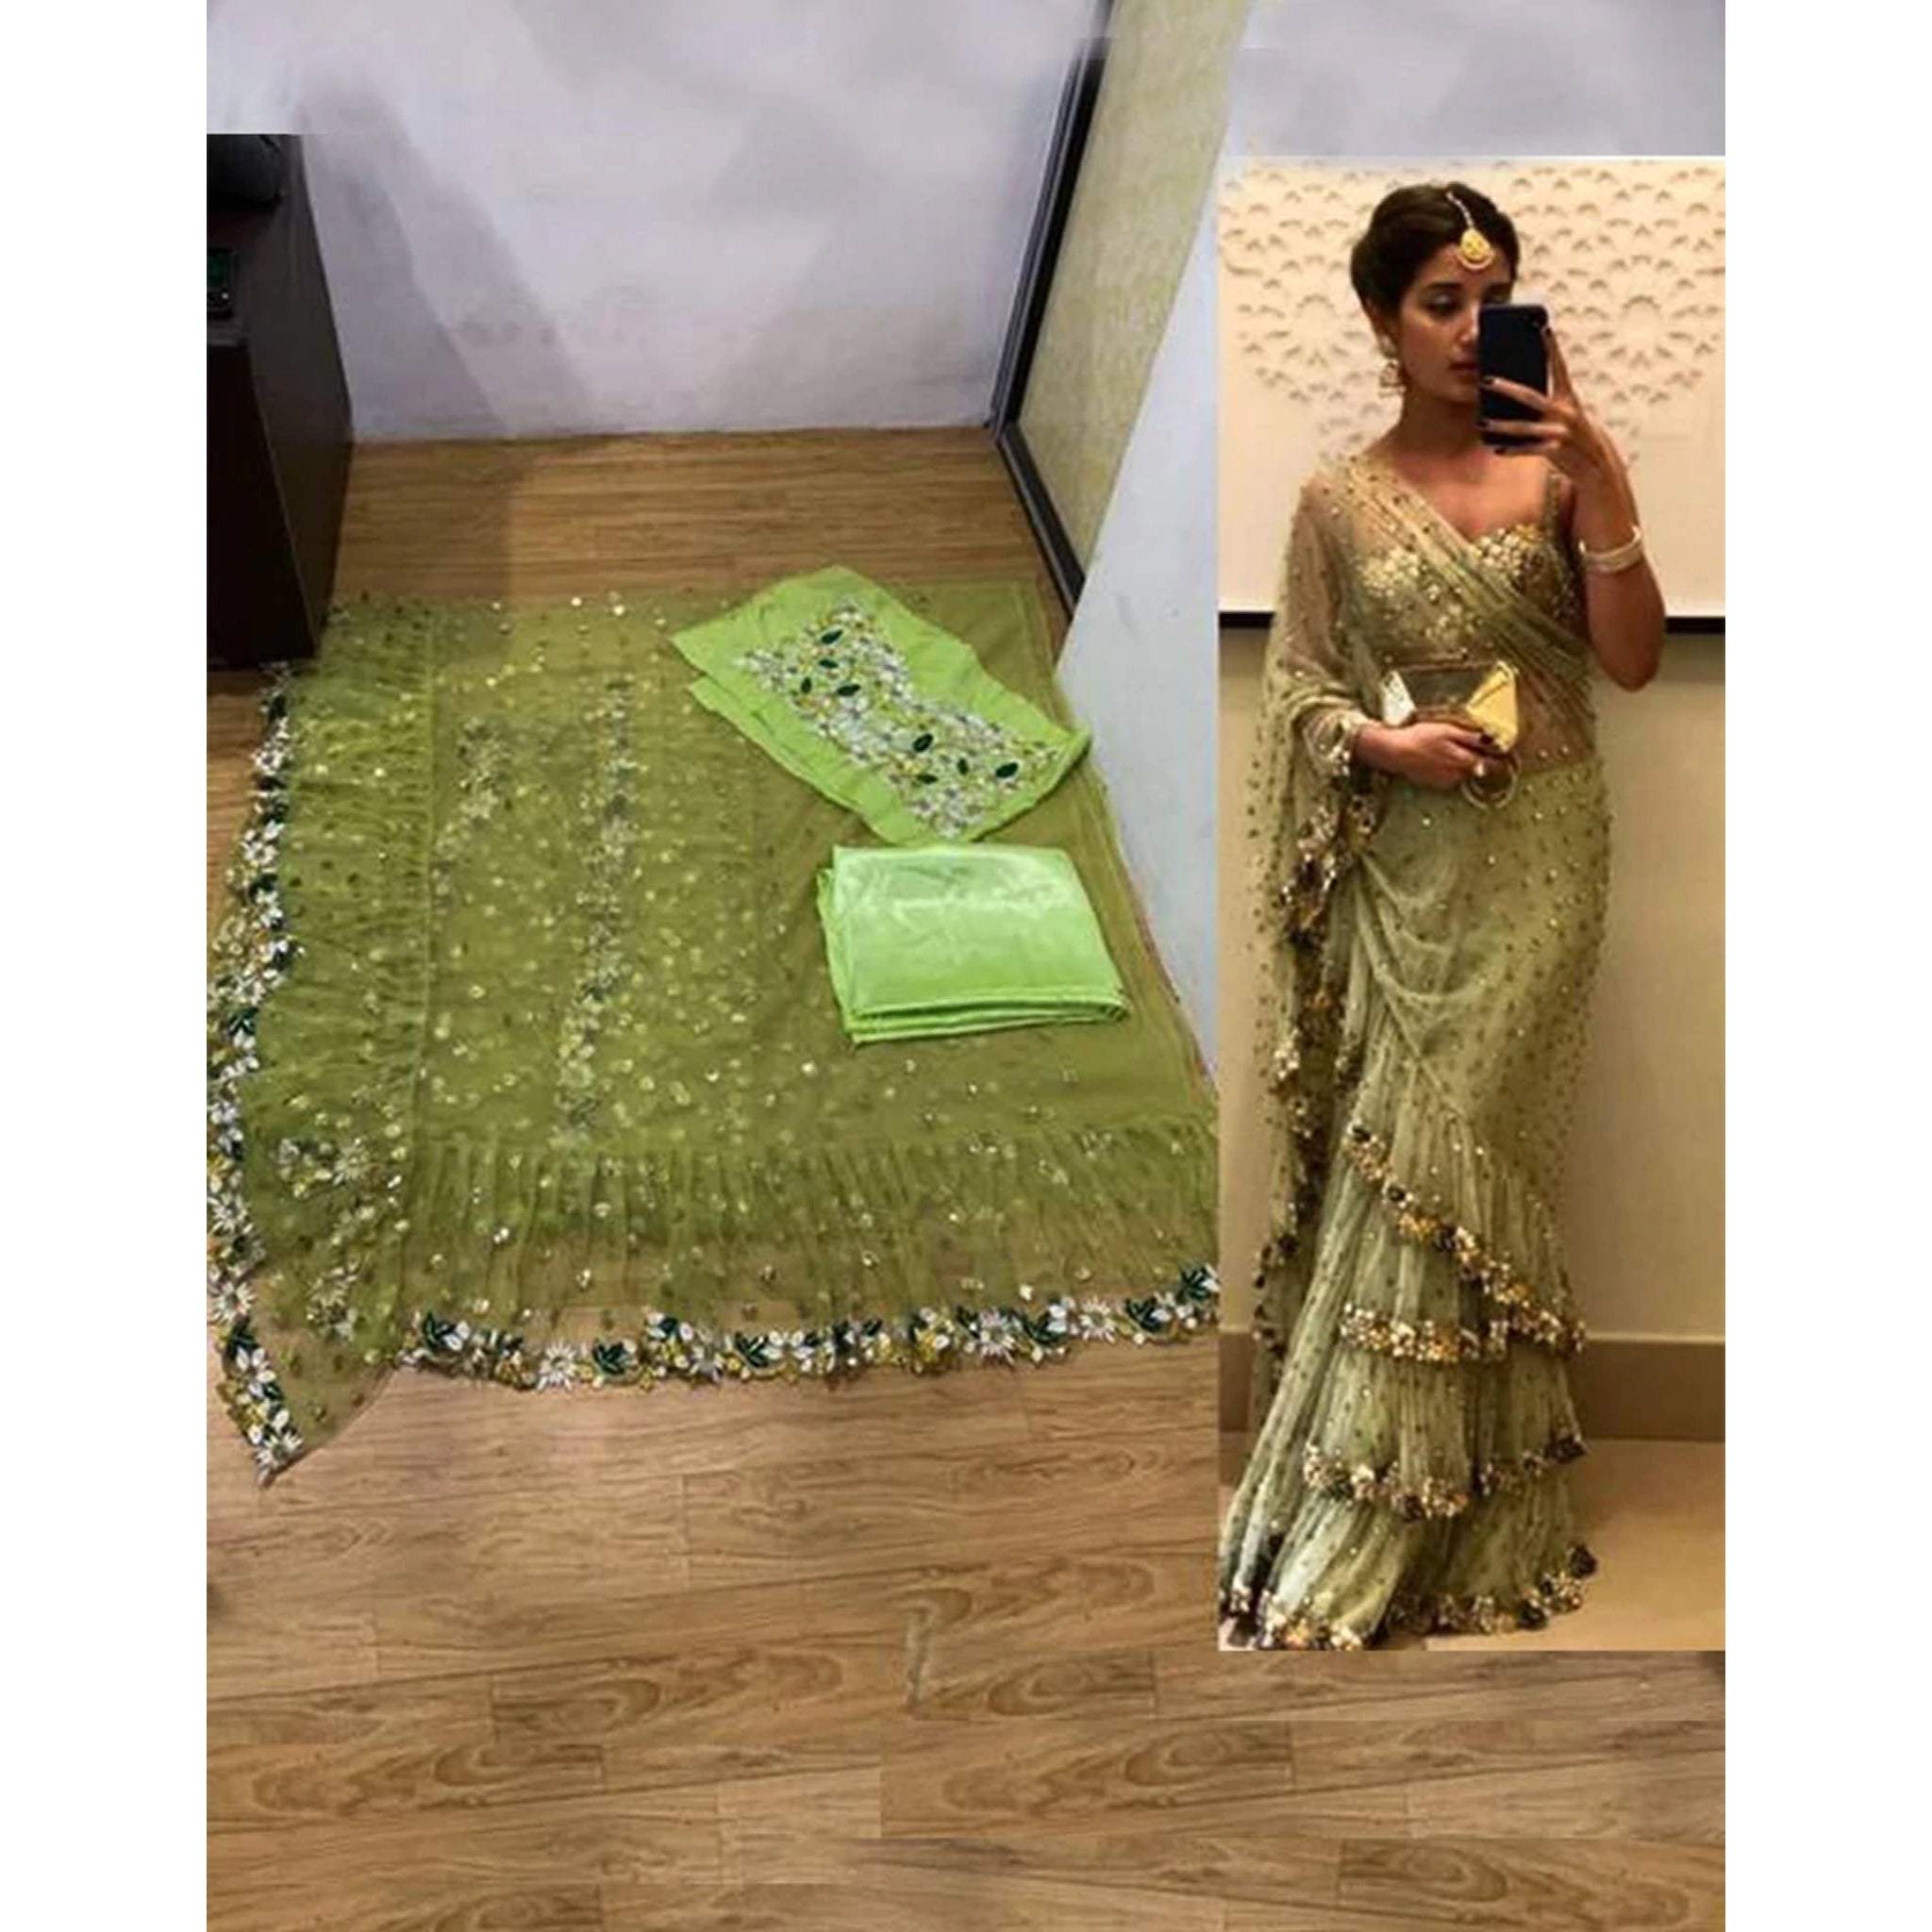 Loukiya - FLORAL DREAMS • Swan White Ruffle Saree with Handcrafted Blouse •  Exclusive Collection • www.loukiya.com . . Model : @annsamuel Makeup :  @rakshana_mua . . #loukiya #sareestyle #weddingsaree #sareelook  #sareeblouseinspiration #